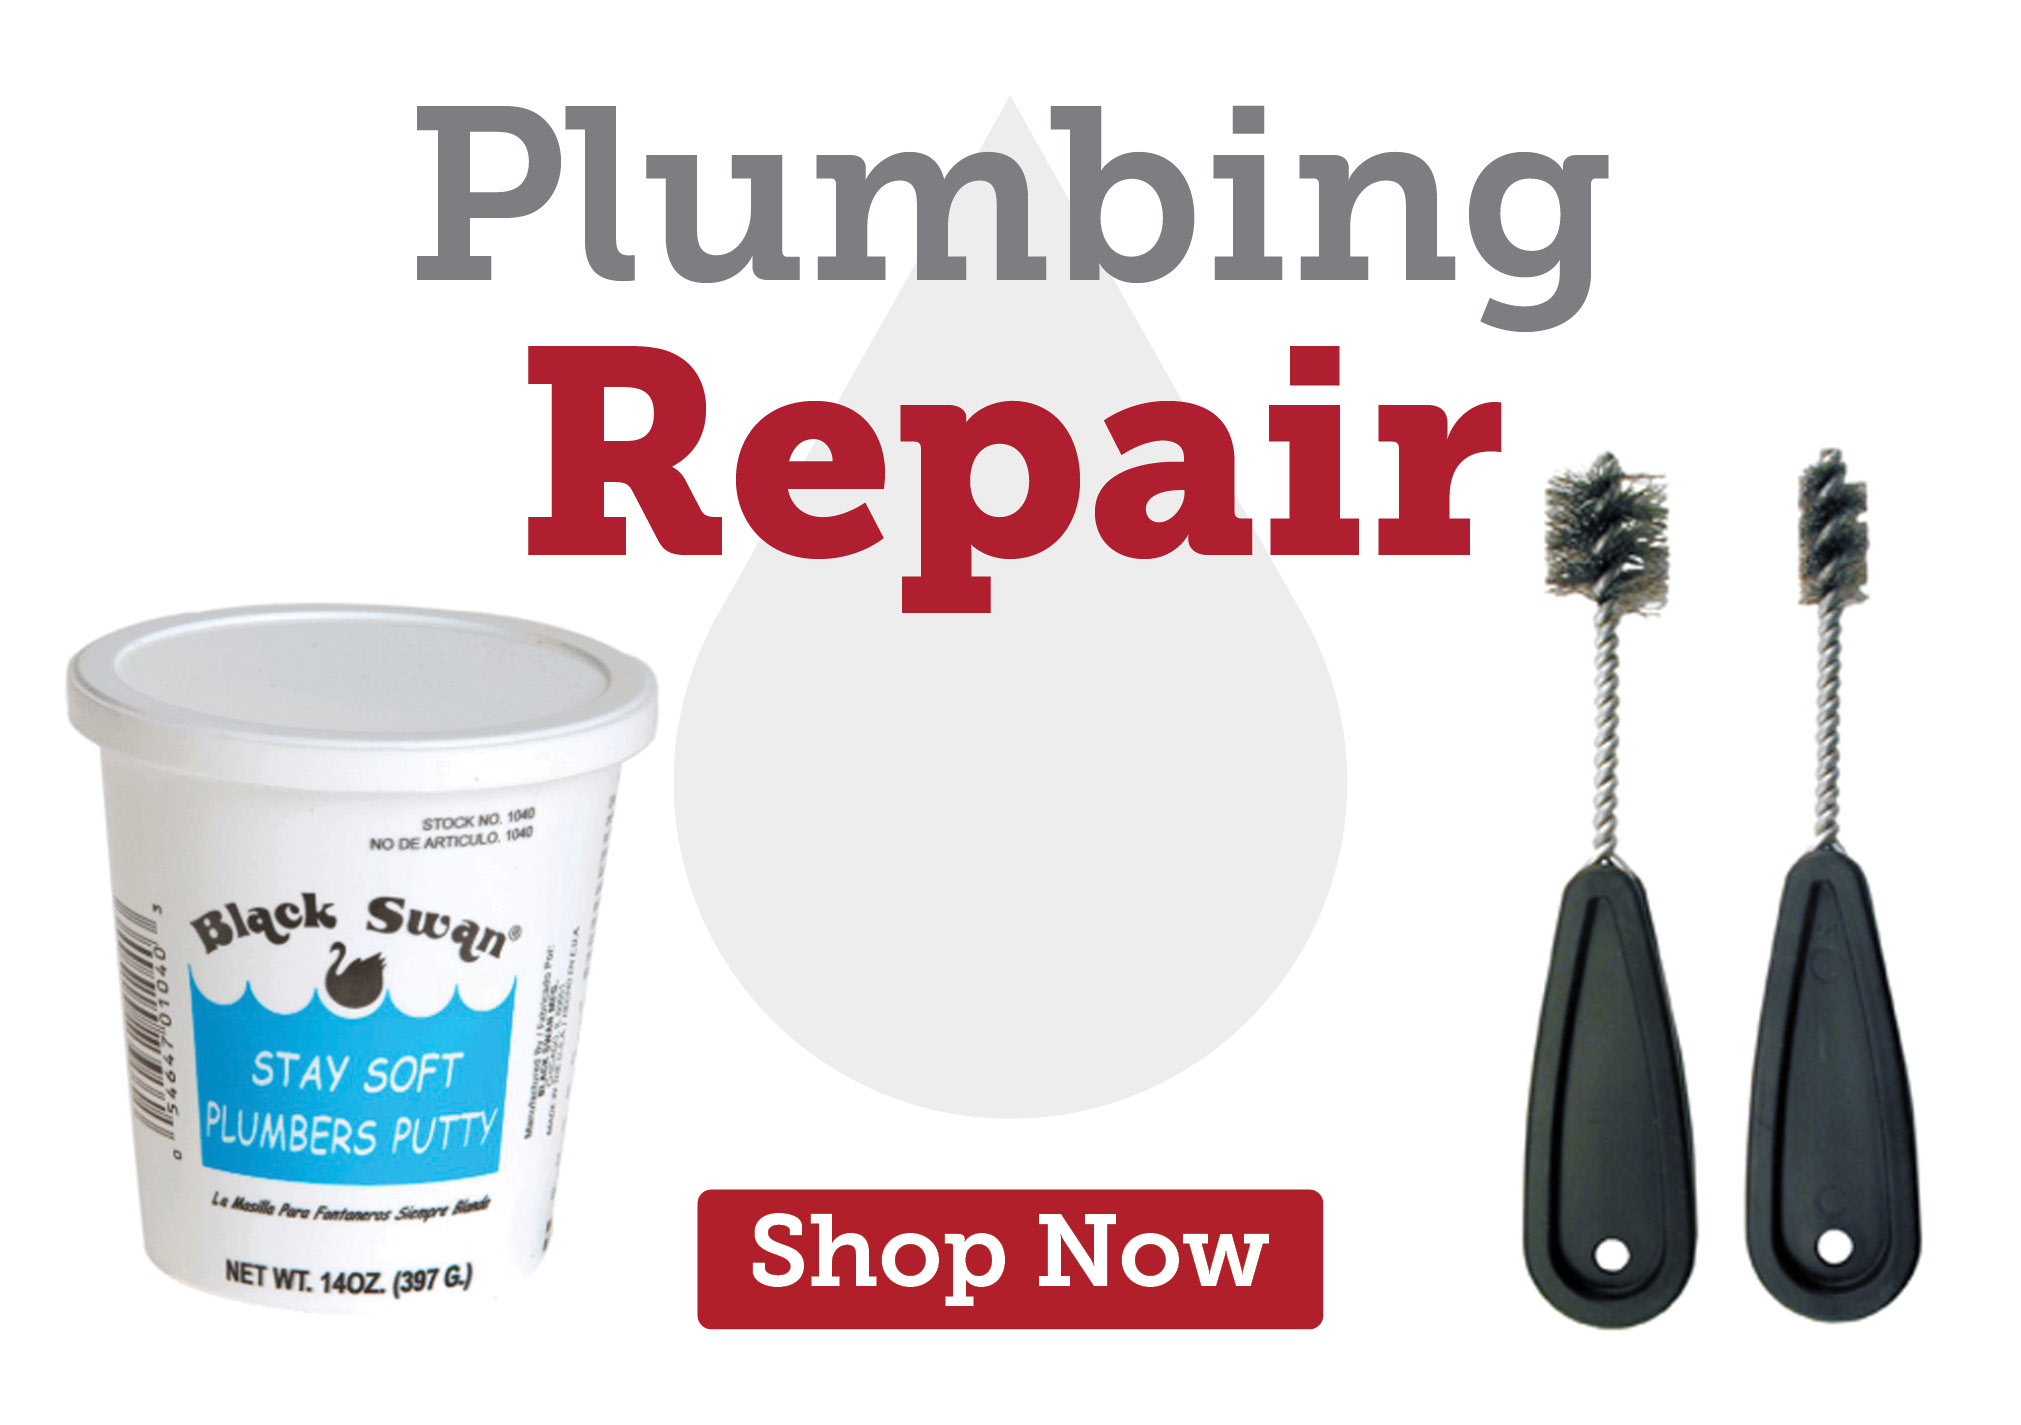 Plumbing repair